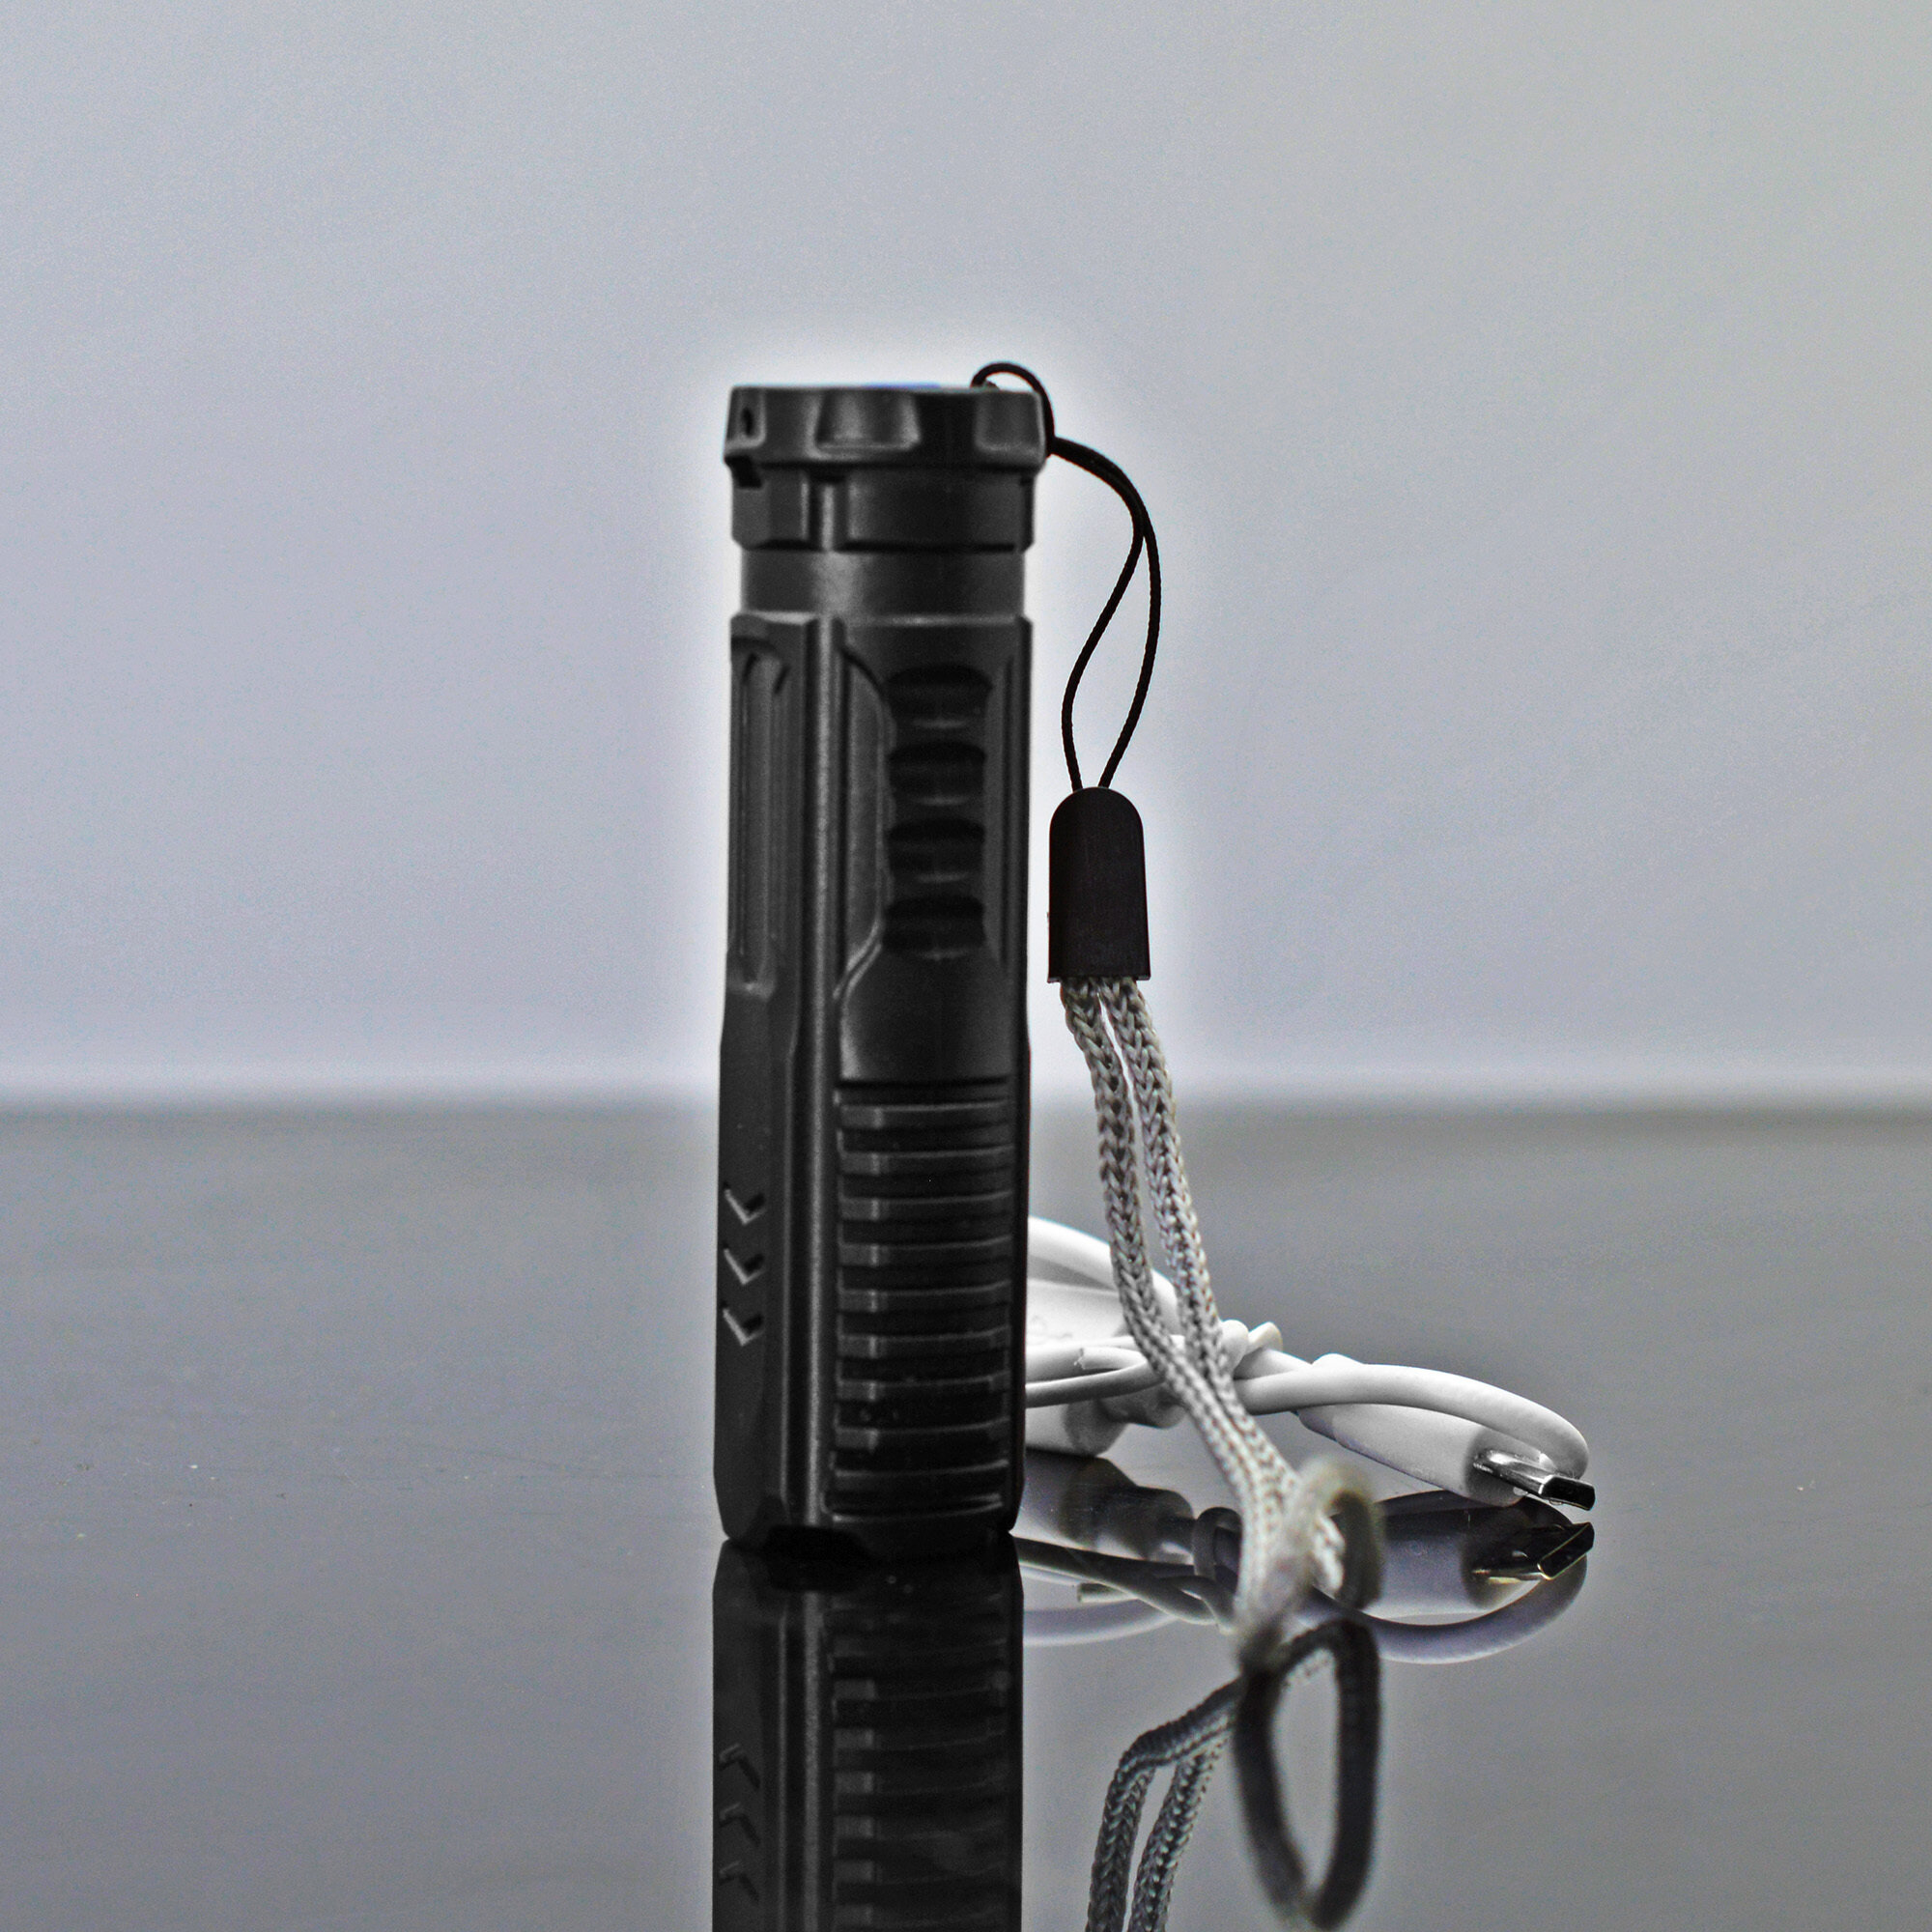 Водонепроницаемый портативный карманный фонарь Y-1540 / для туризма, для охоты, для рыбалки / зарядка от micro USB / цвет - черный